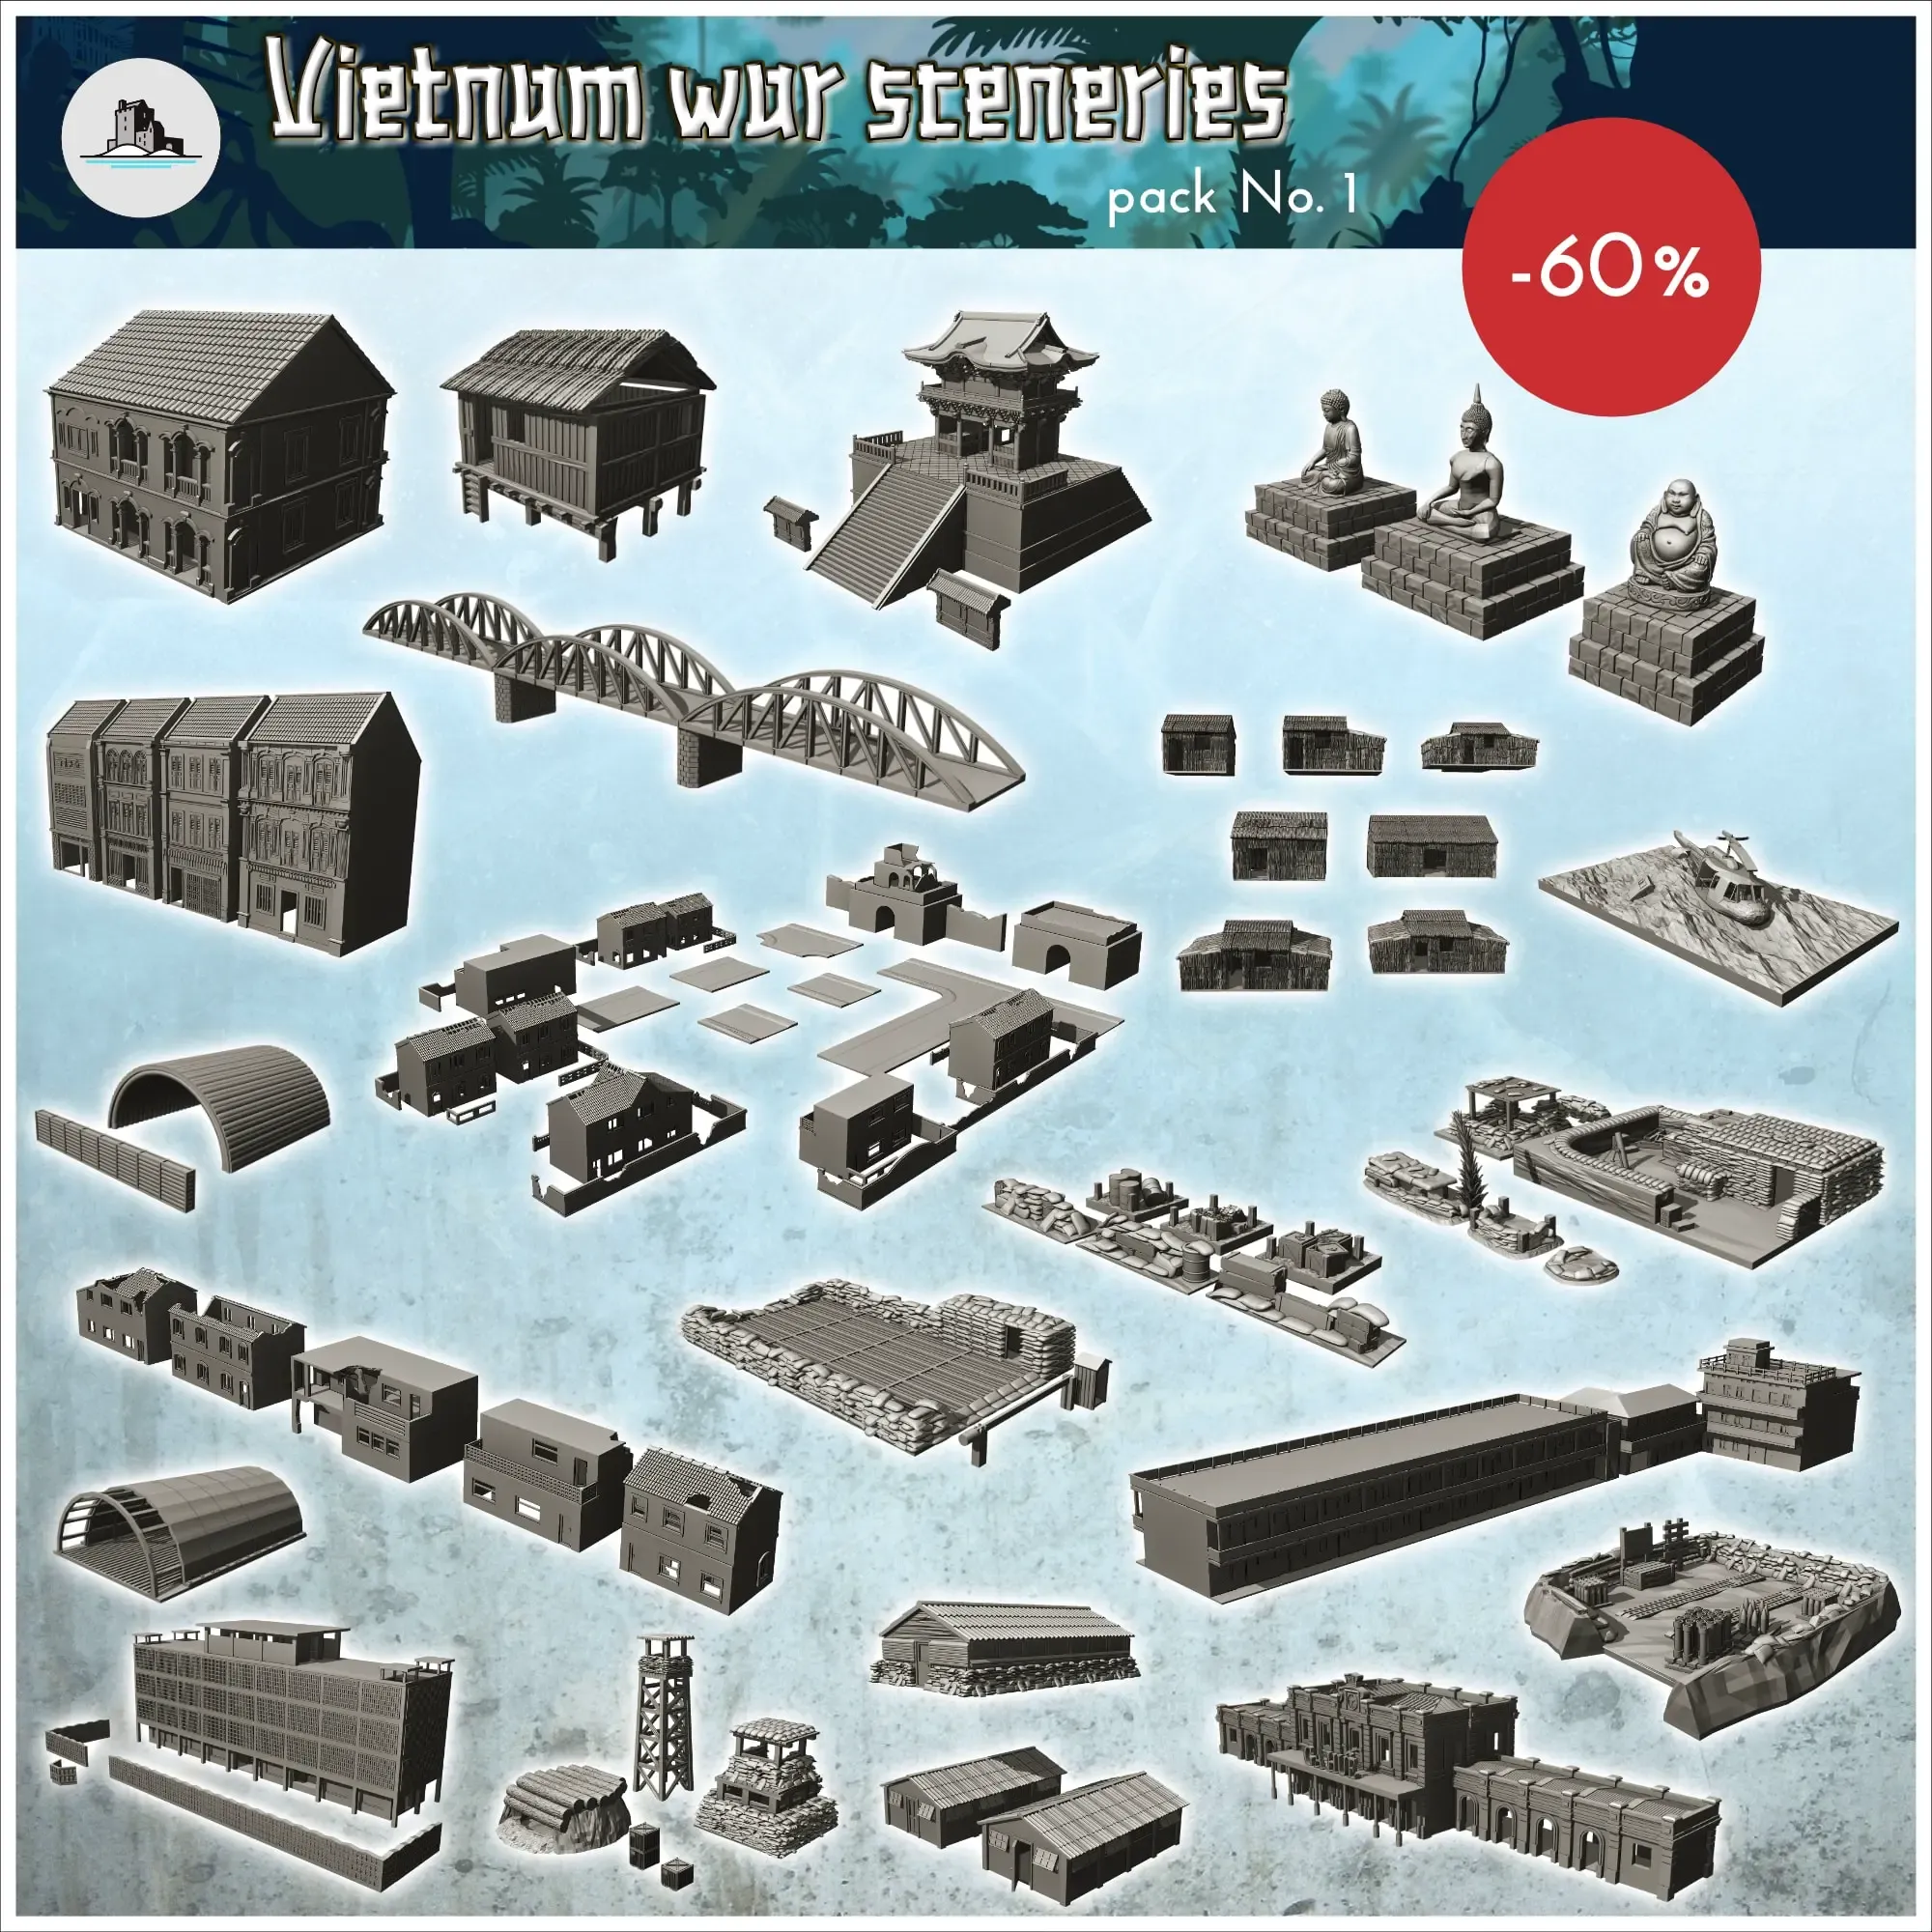 Vietnam war sceneries pack No. 1